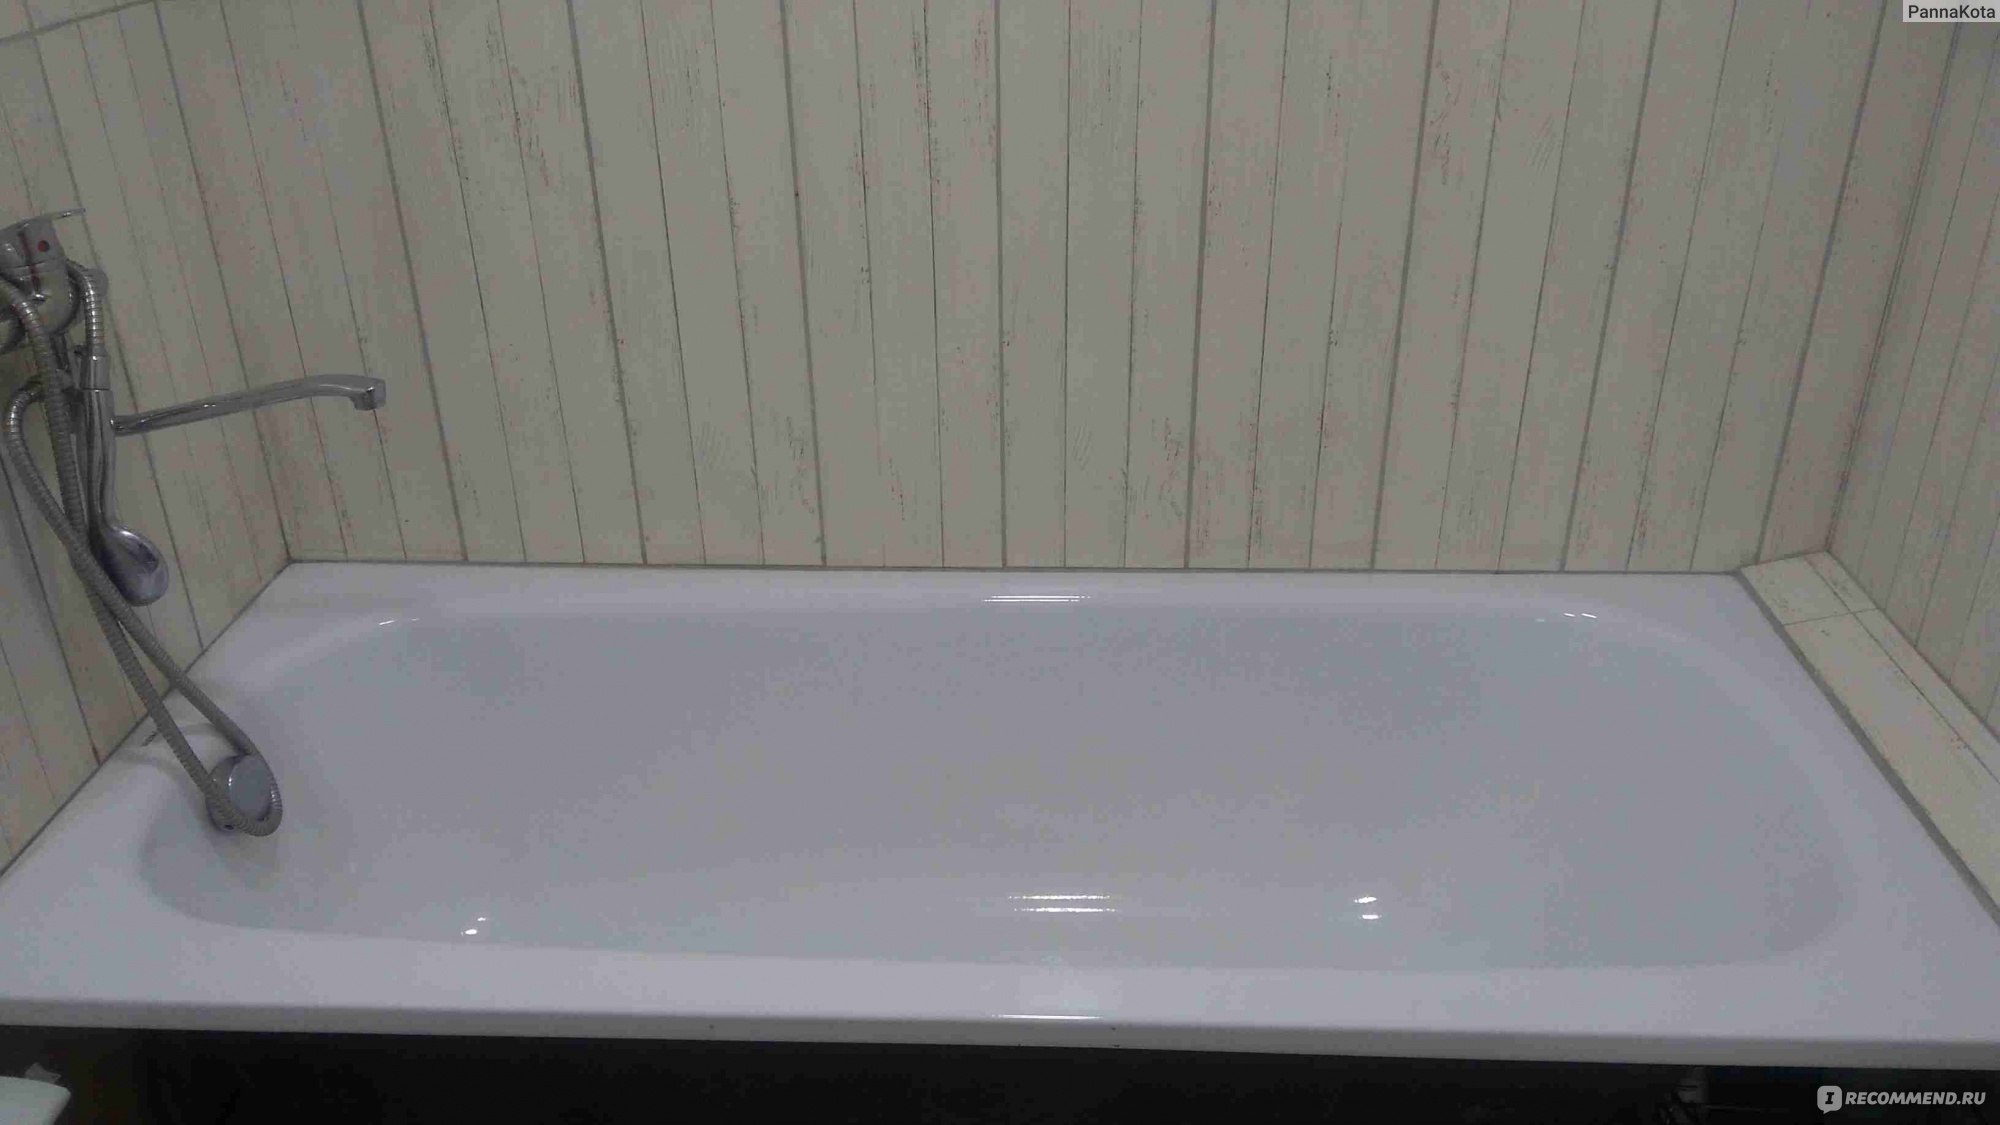 Ванна с полимерным покрытием. Ванна Reimar 170x70 сталь. Ванна полимерная. Ванны стальные с полимерным покрытием. Прозрачные полимерные ванны.